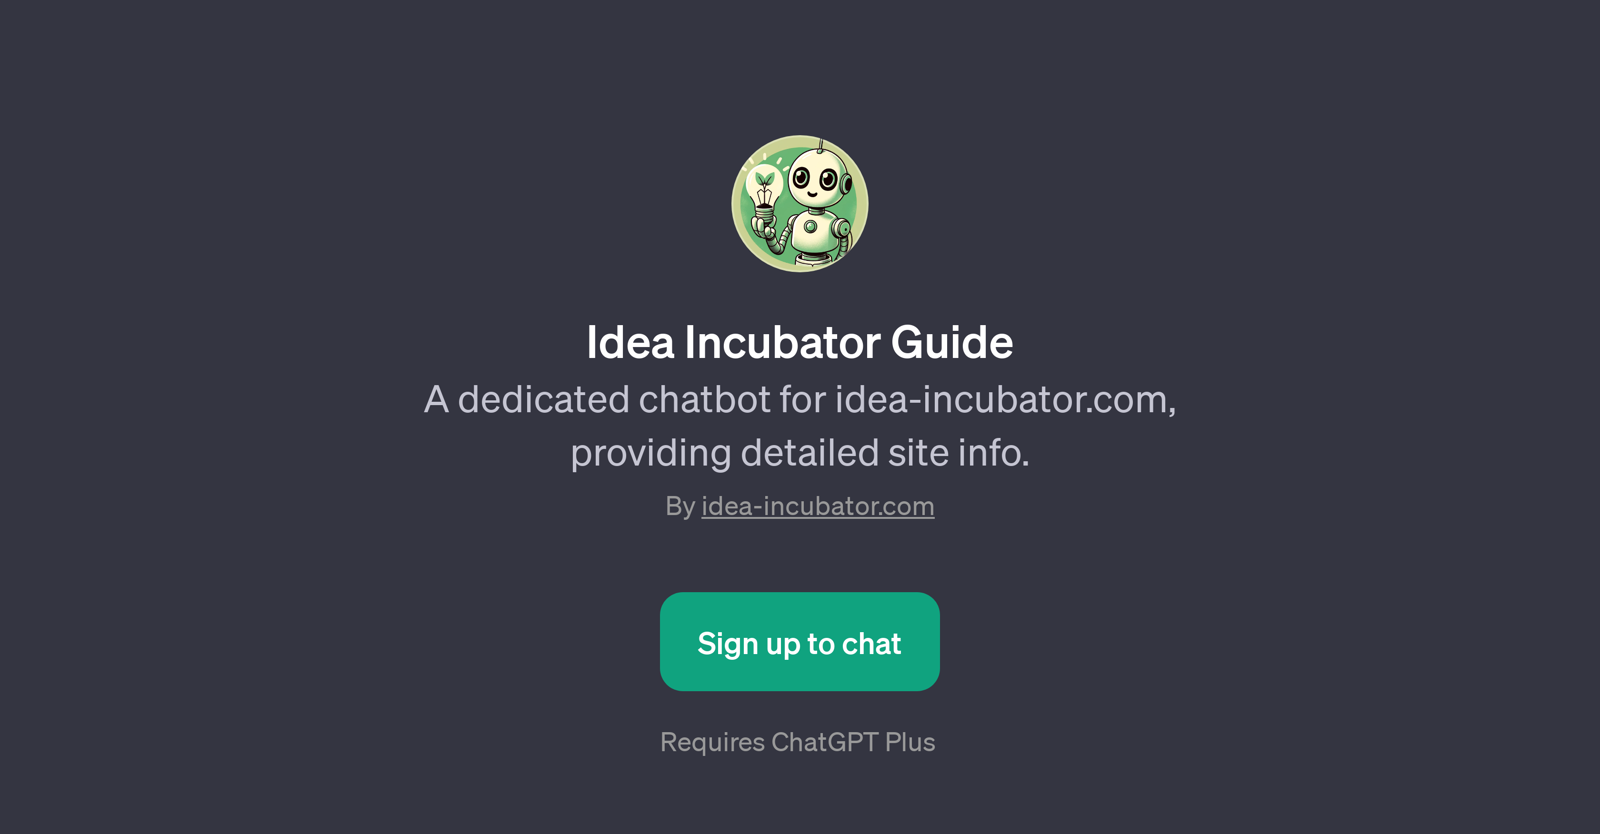 Idea Incubator Guide website